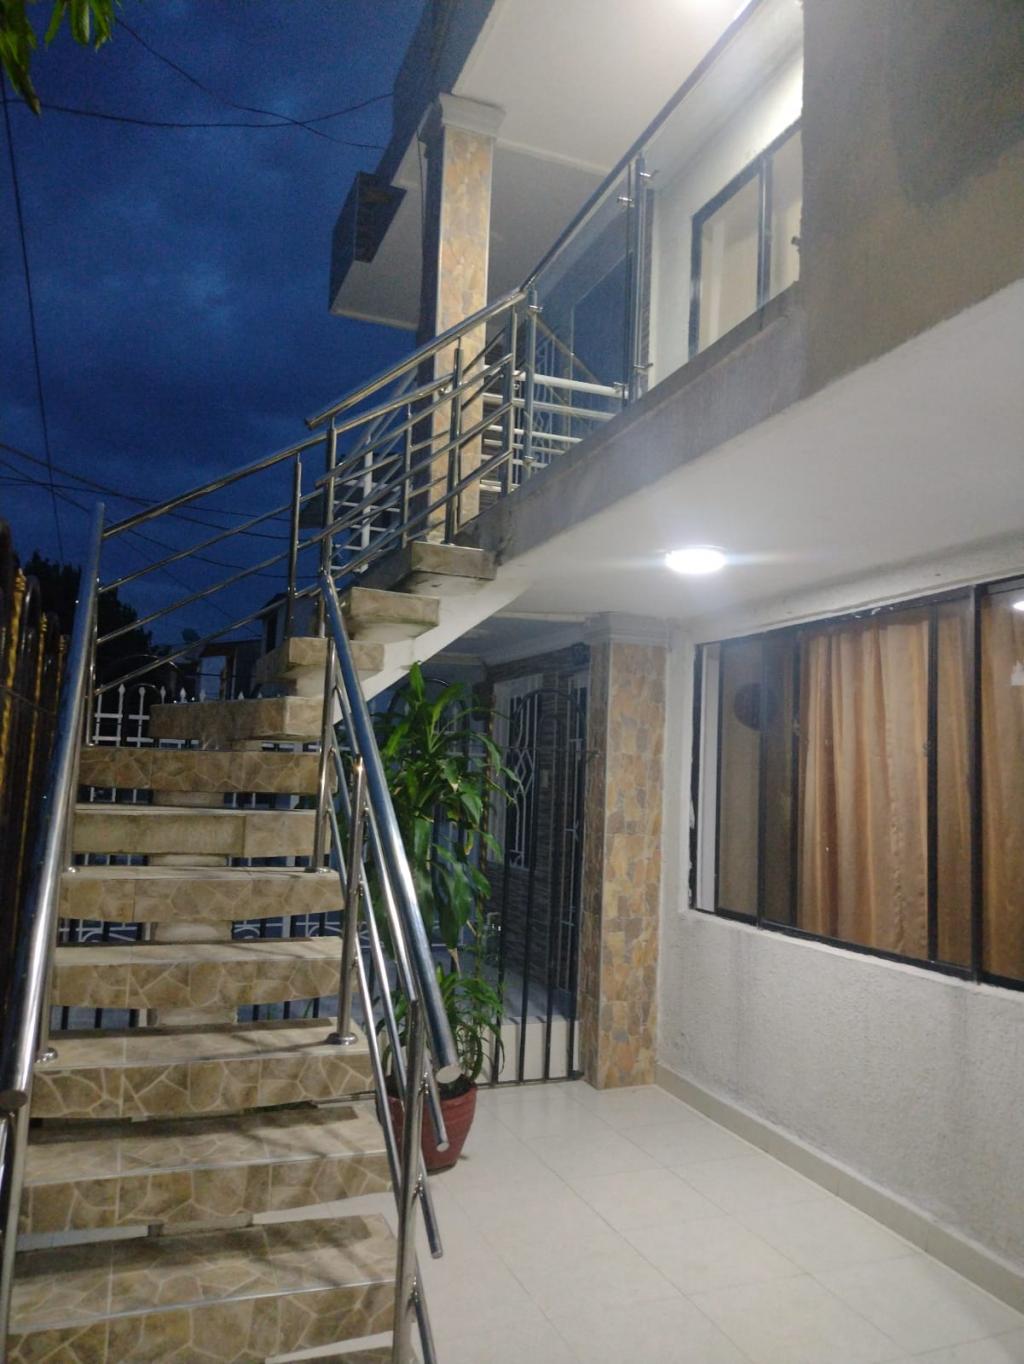 Apartamento en Arriendo por Bienco S.A ubicado en Barranquilla. El código del inmueble es: 7370202 Imágen 2